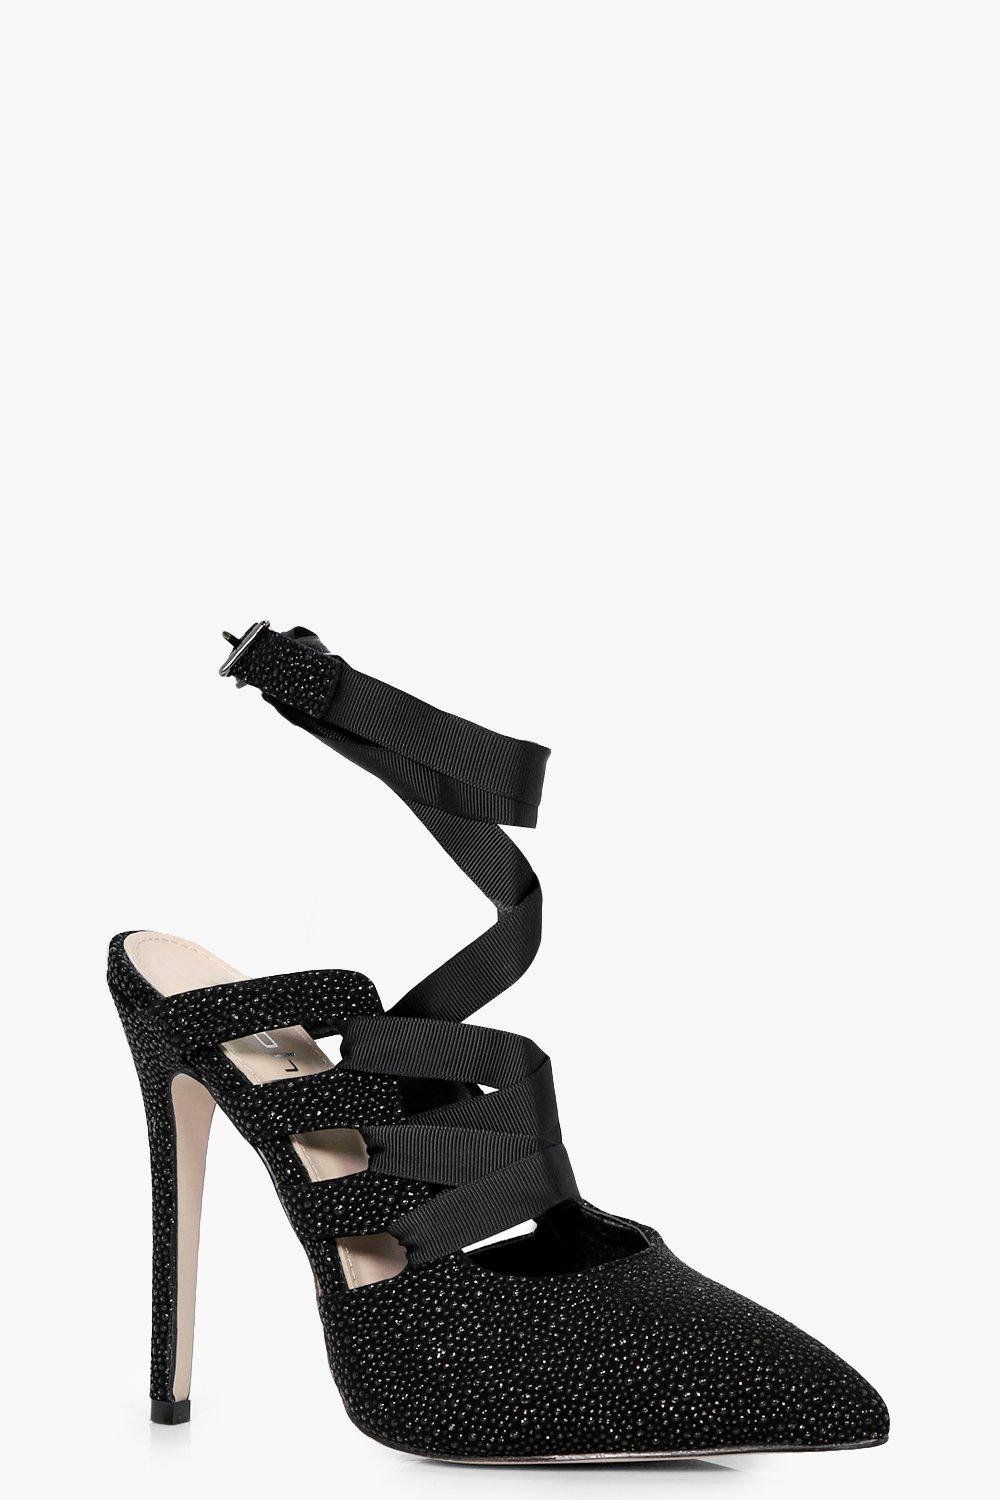 black court stilettos